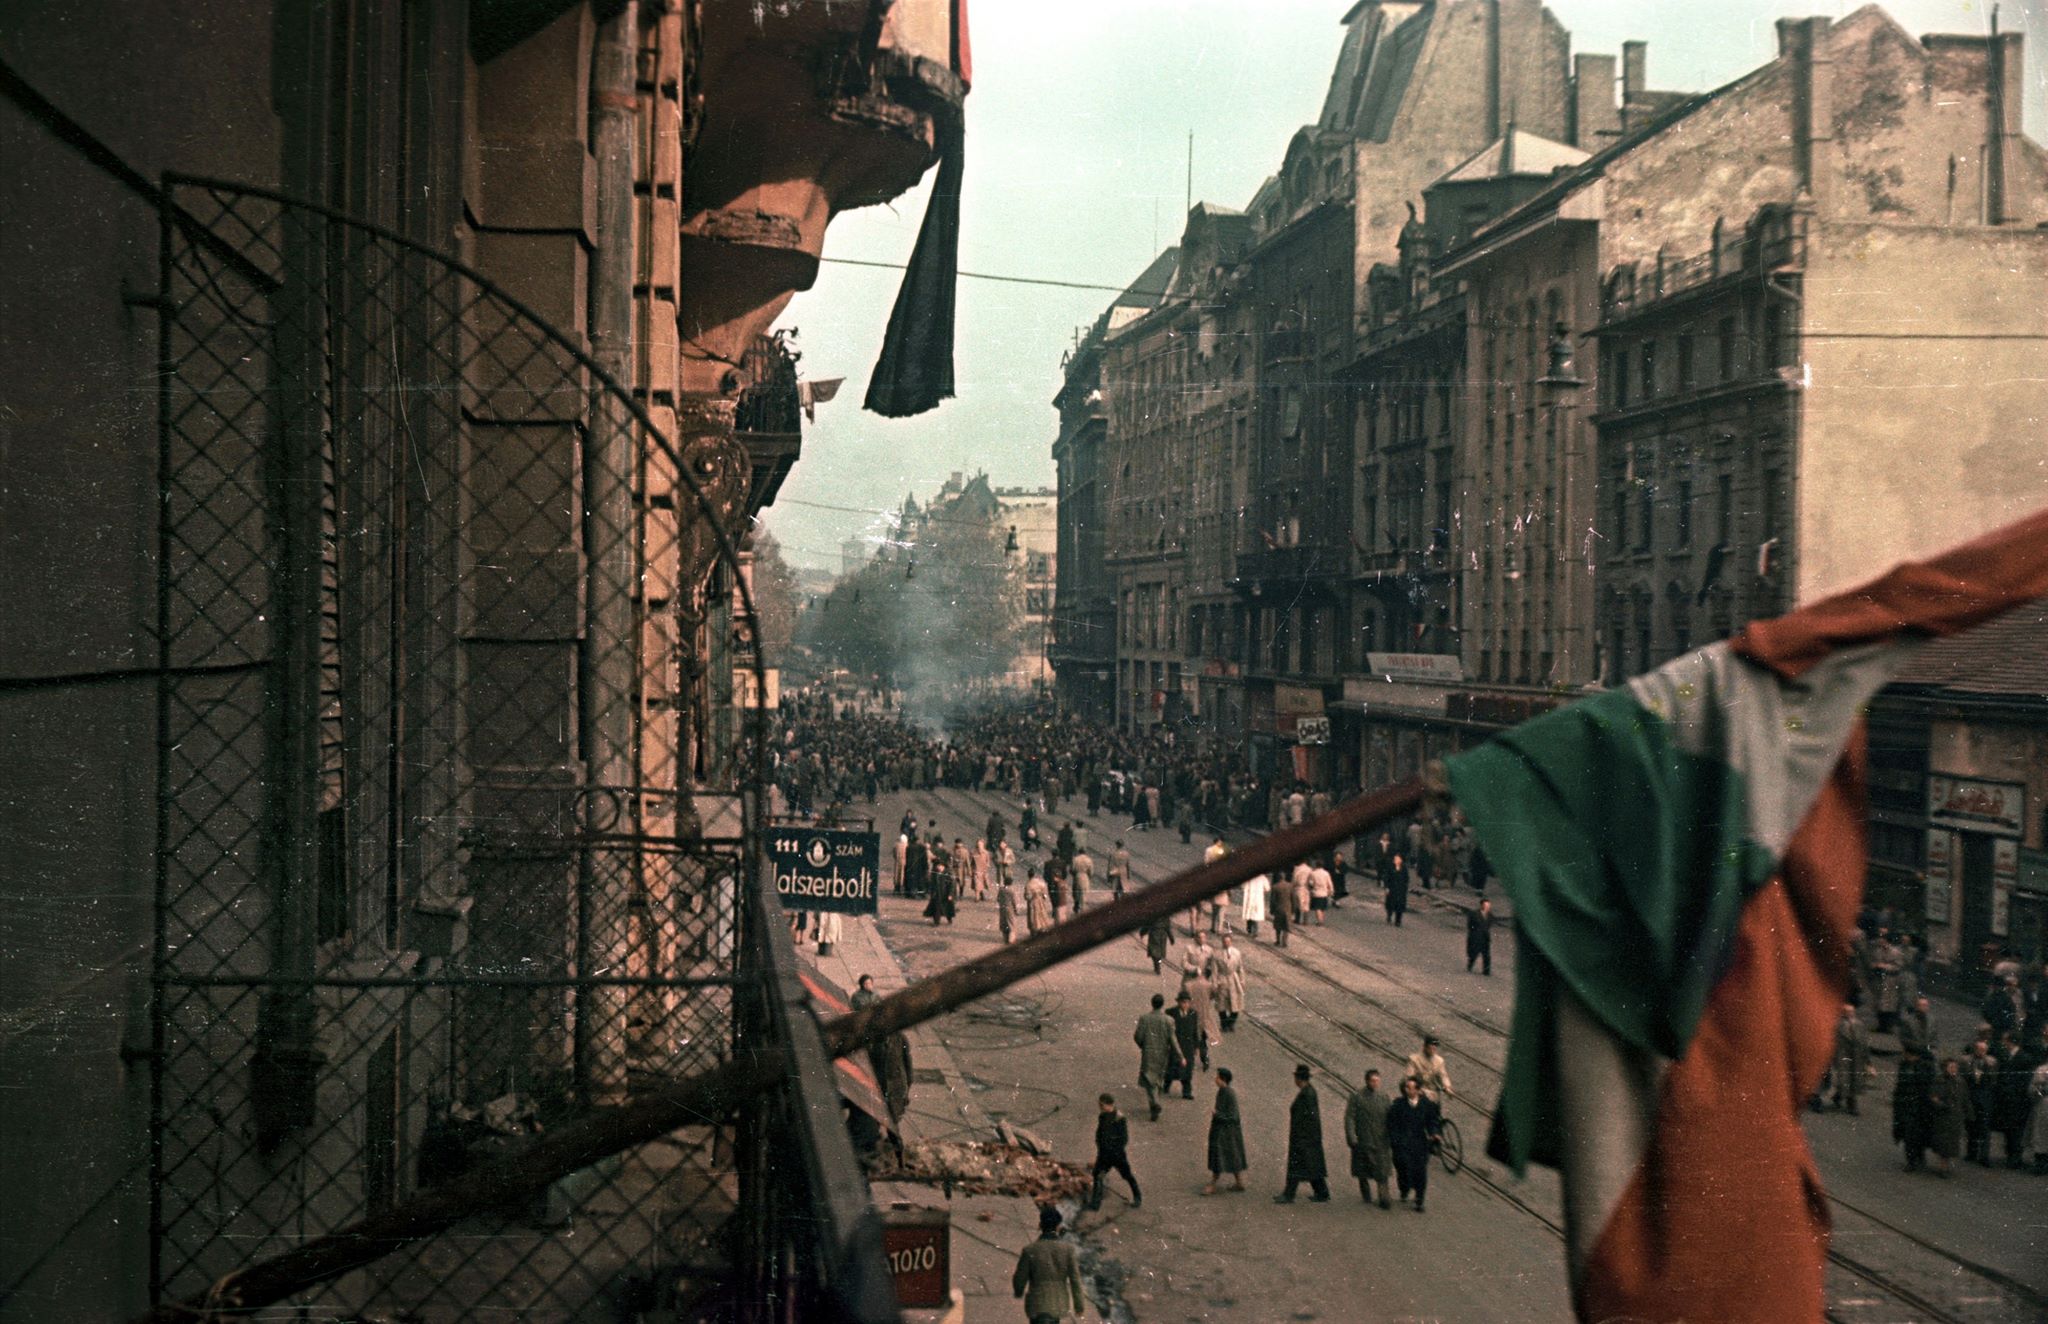 Majd ugyanonnan egy újabb fotó, mintegy két és fél évvel később, az 1956-os forradalom idején.